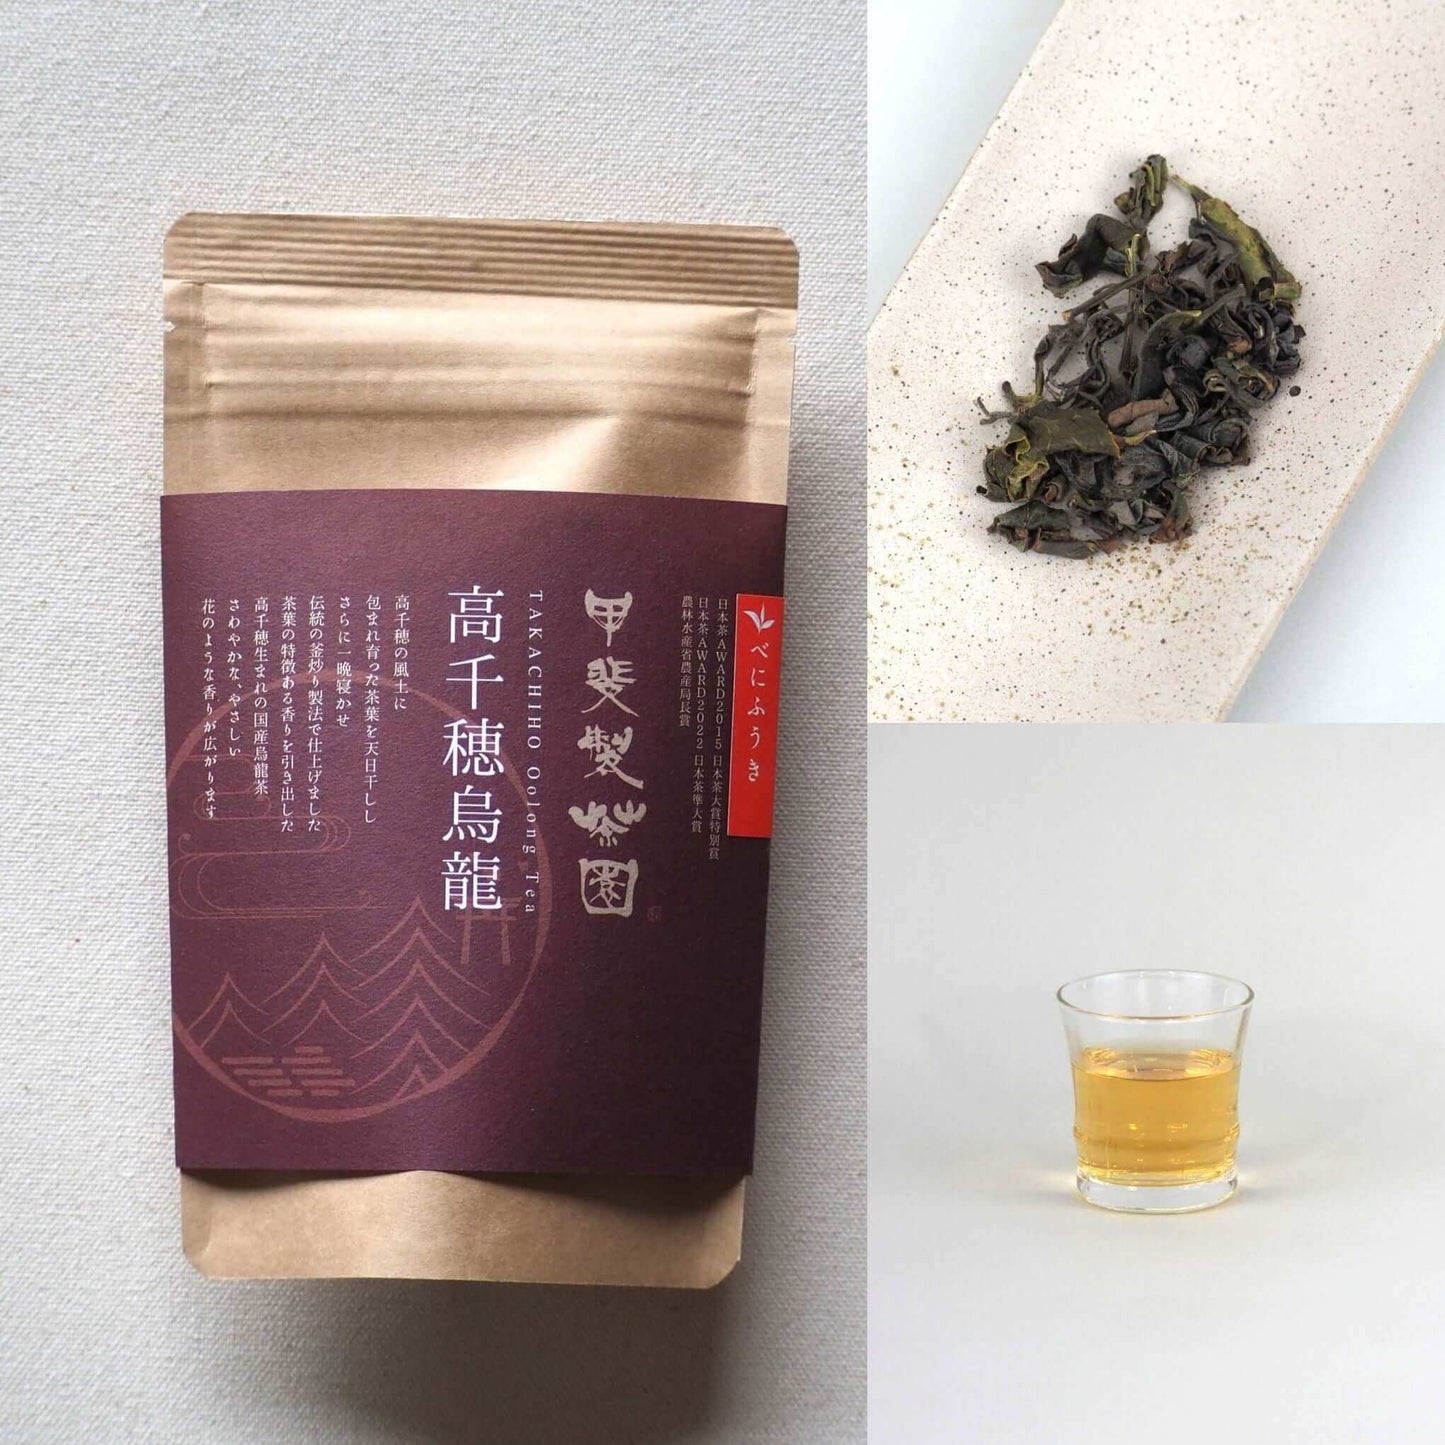 Tea gift "No, it's Miyazaki tea." Japanese oolong tea set